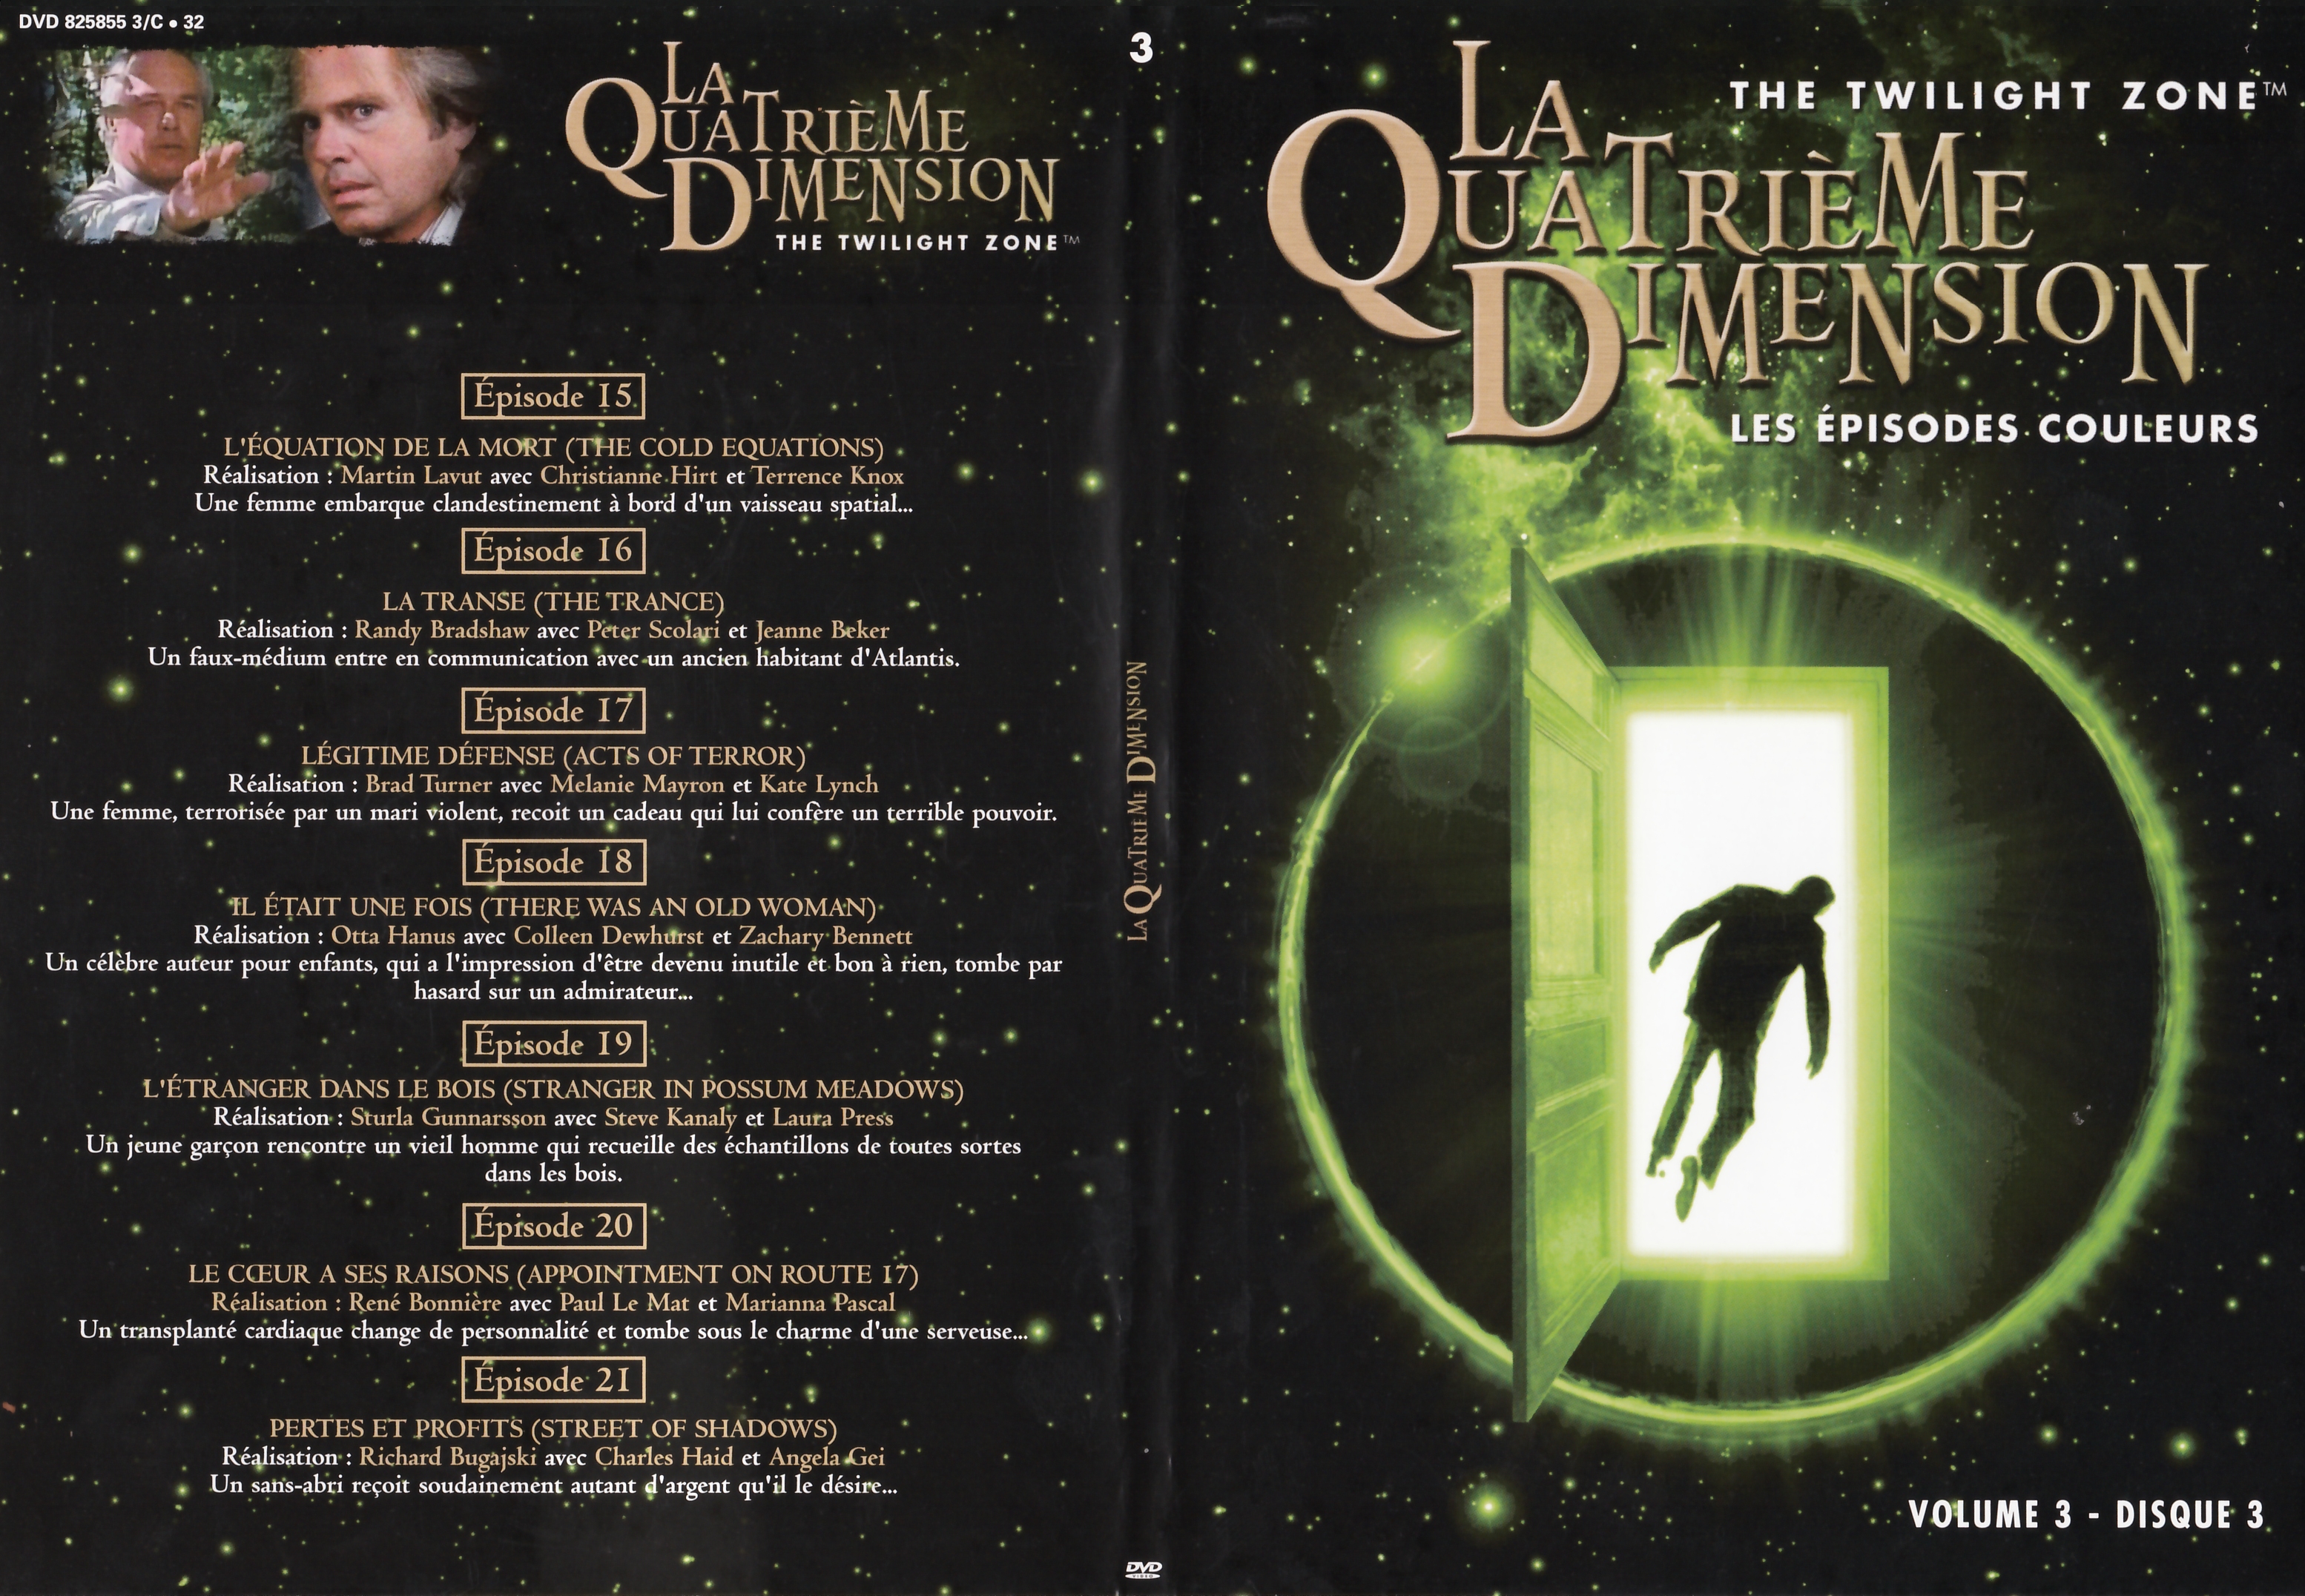 Jaquette DVD La quatrime dimension - Episodes couleurs vol 3 DVD 3